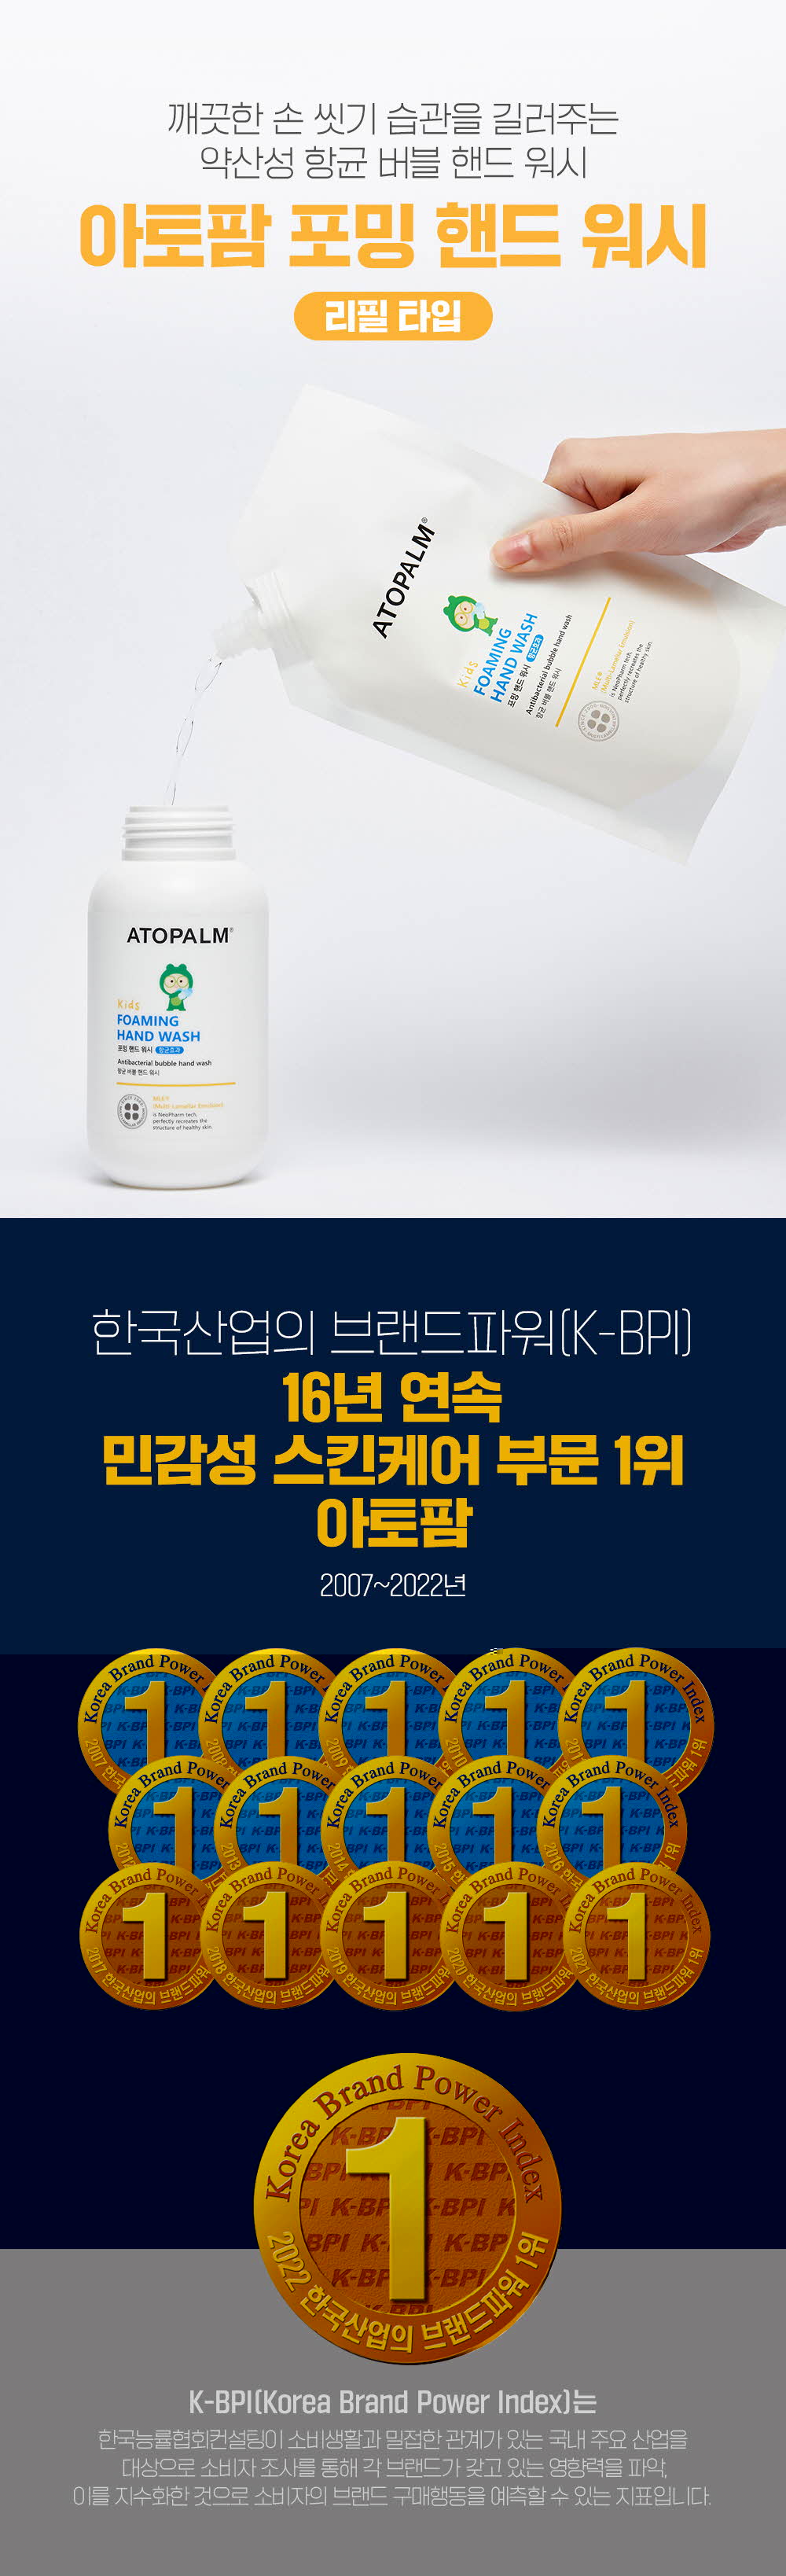 깨끗한 손 씻기 습관을 길러주는 약산성 항균 버블 핸드 워시 리필 타입
	한국산업의 브랜드파워(K-BPI) 16년 연속 민감성 스킨케어 부문 1위 아토팜 2007~2022년